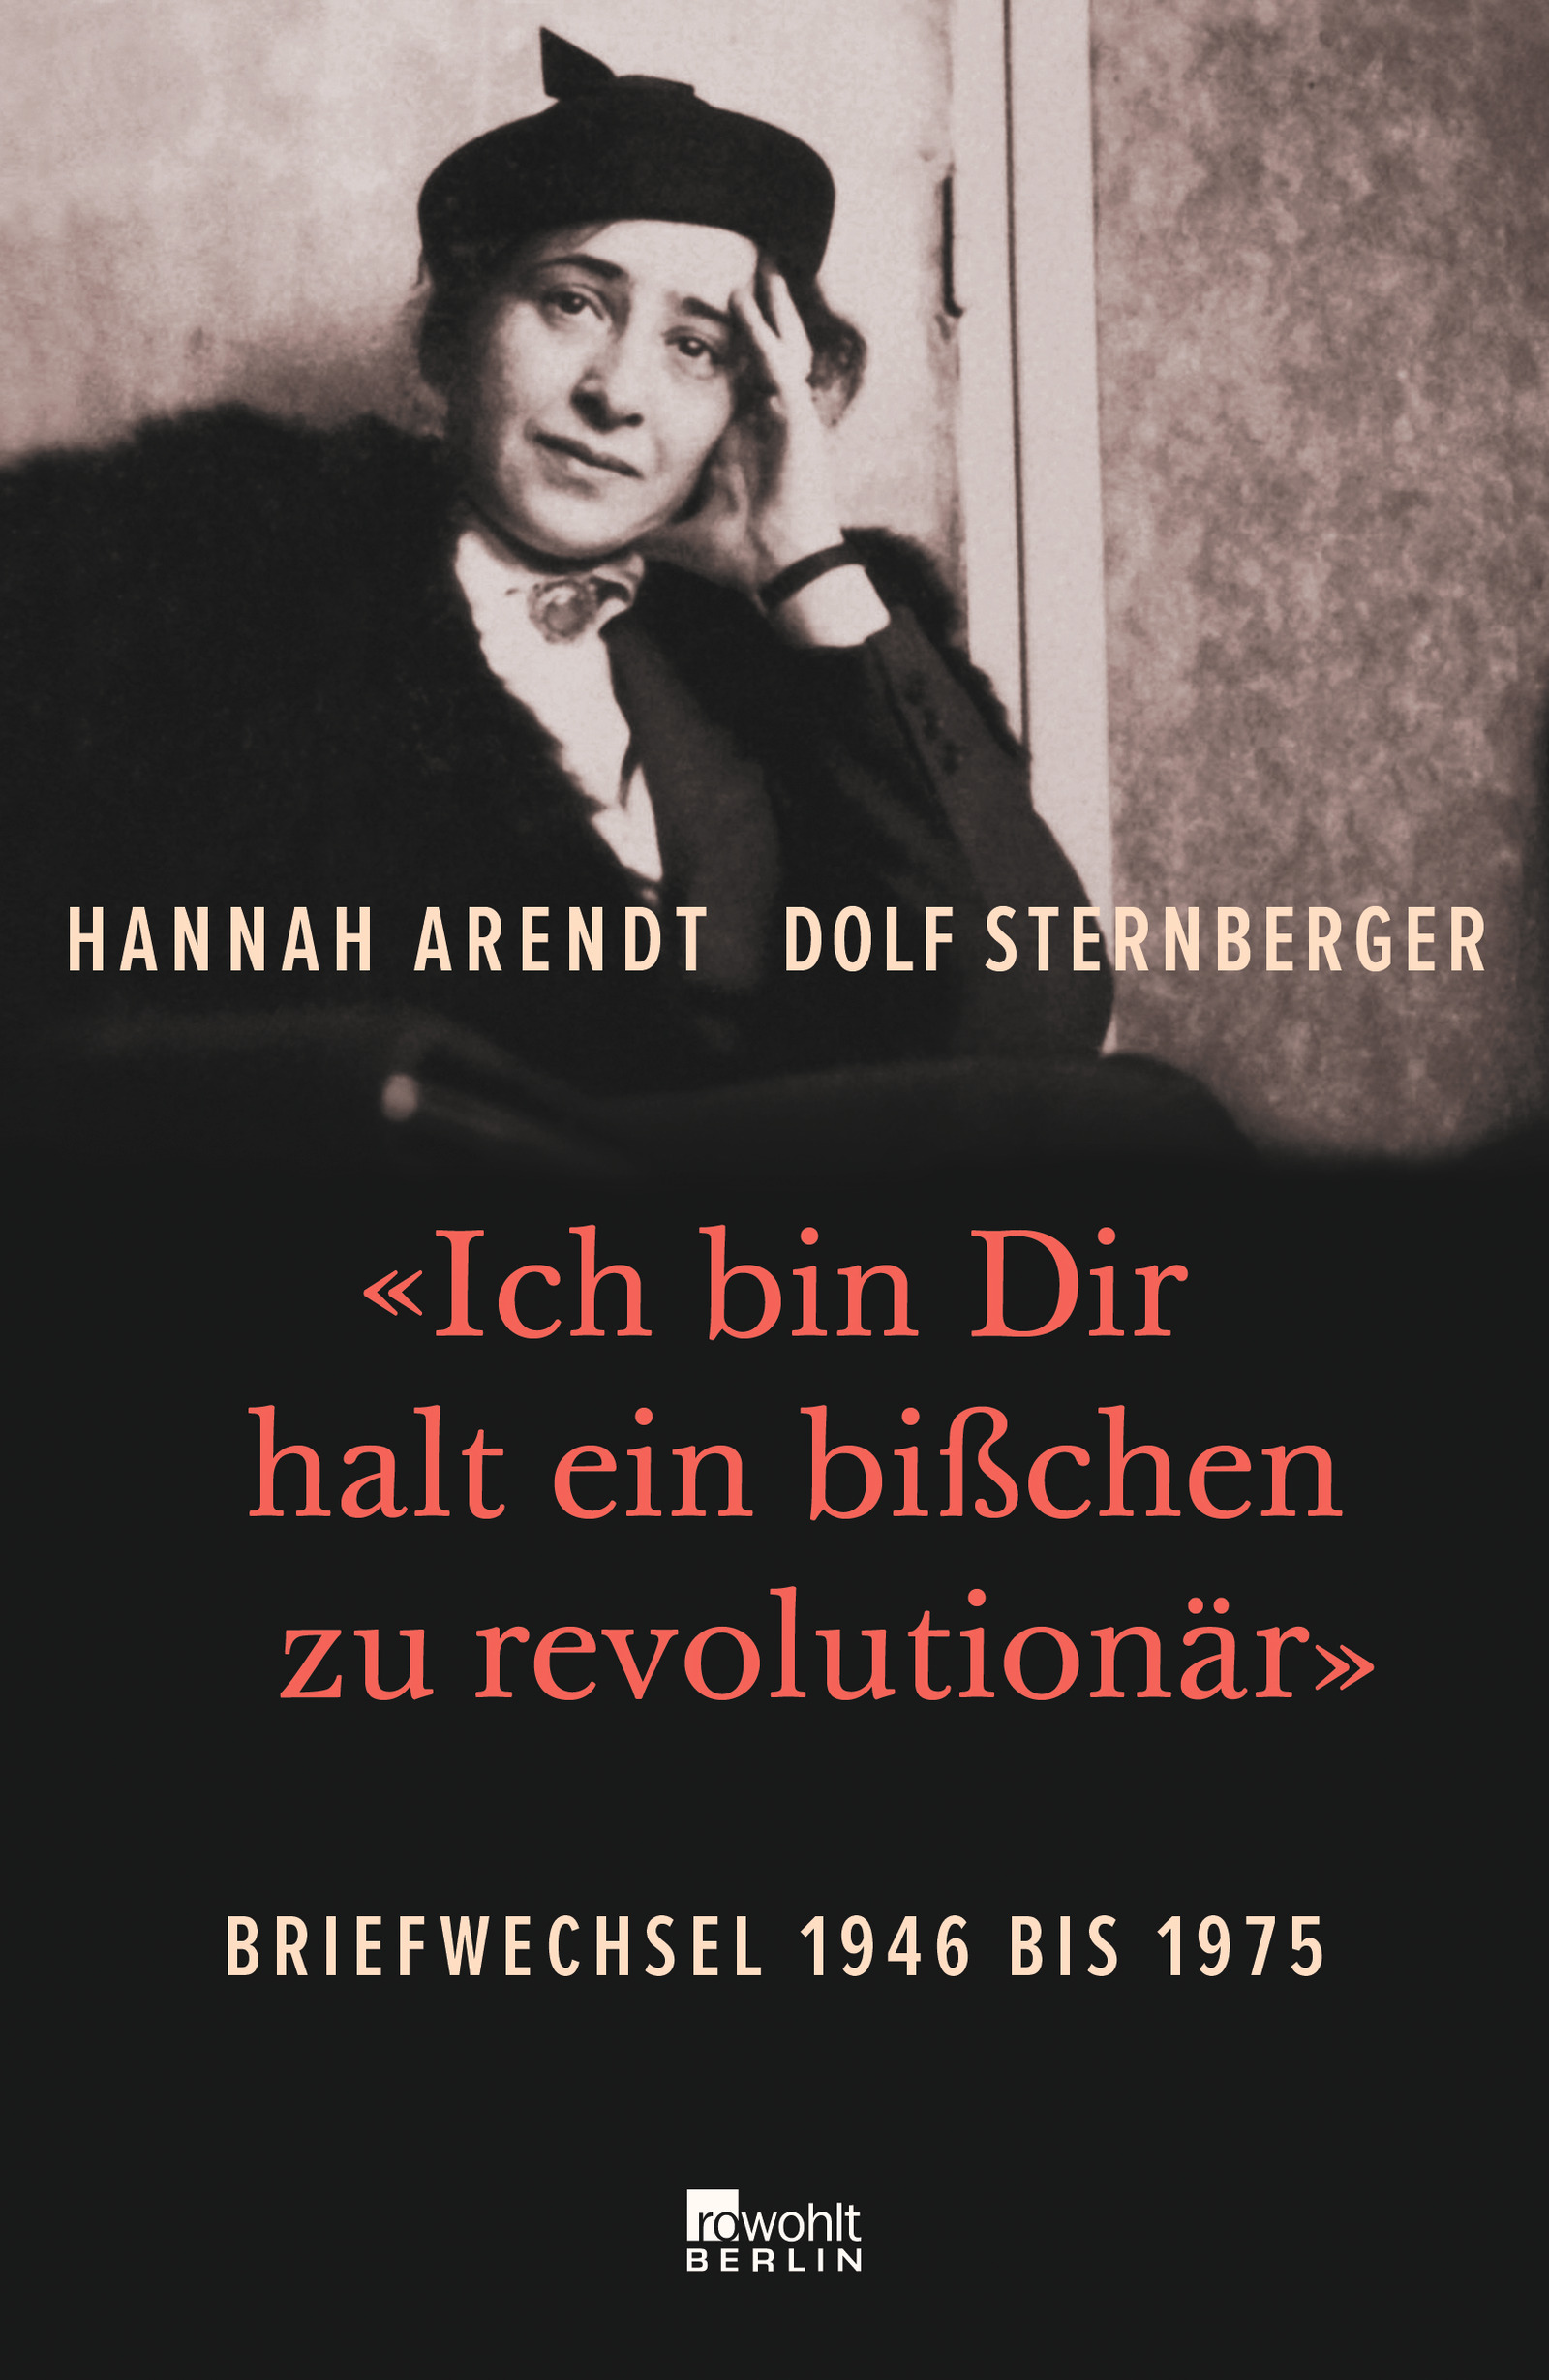 «Ich bin Dir halt ein bißchen zu revolutionär» Briefwechsel 1946 bis 1975 von Hannah Arendt & Dolf Sternberger Parkbuchhandlung Buchhandlung Bonn Bad Godesberg